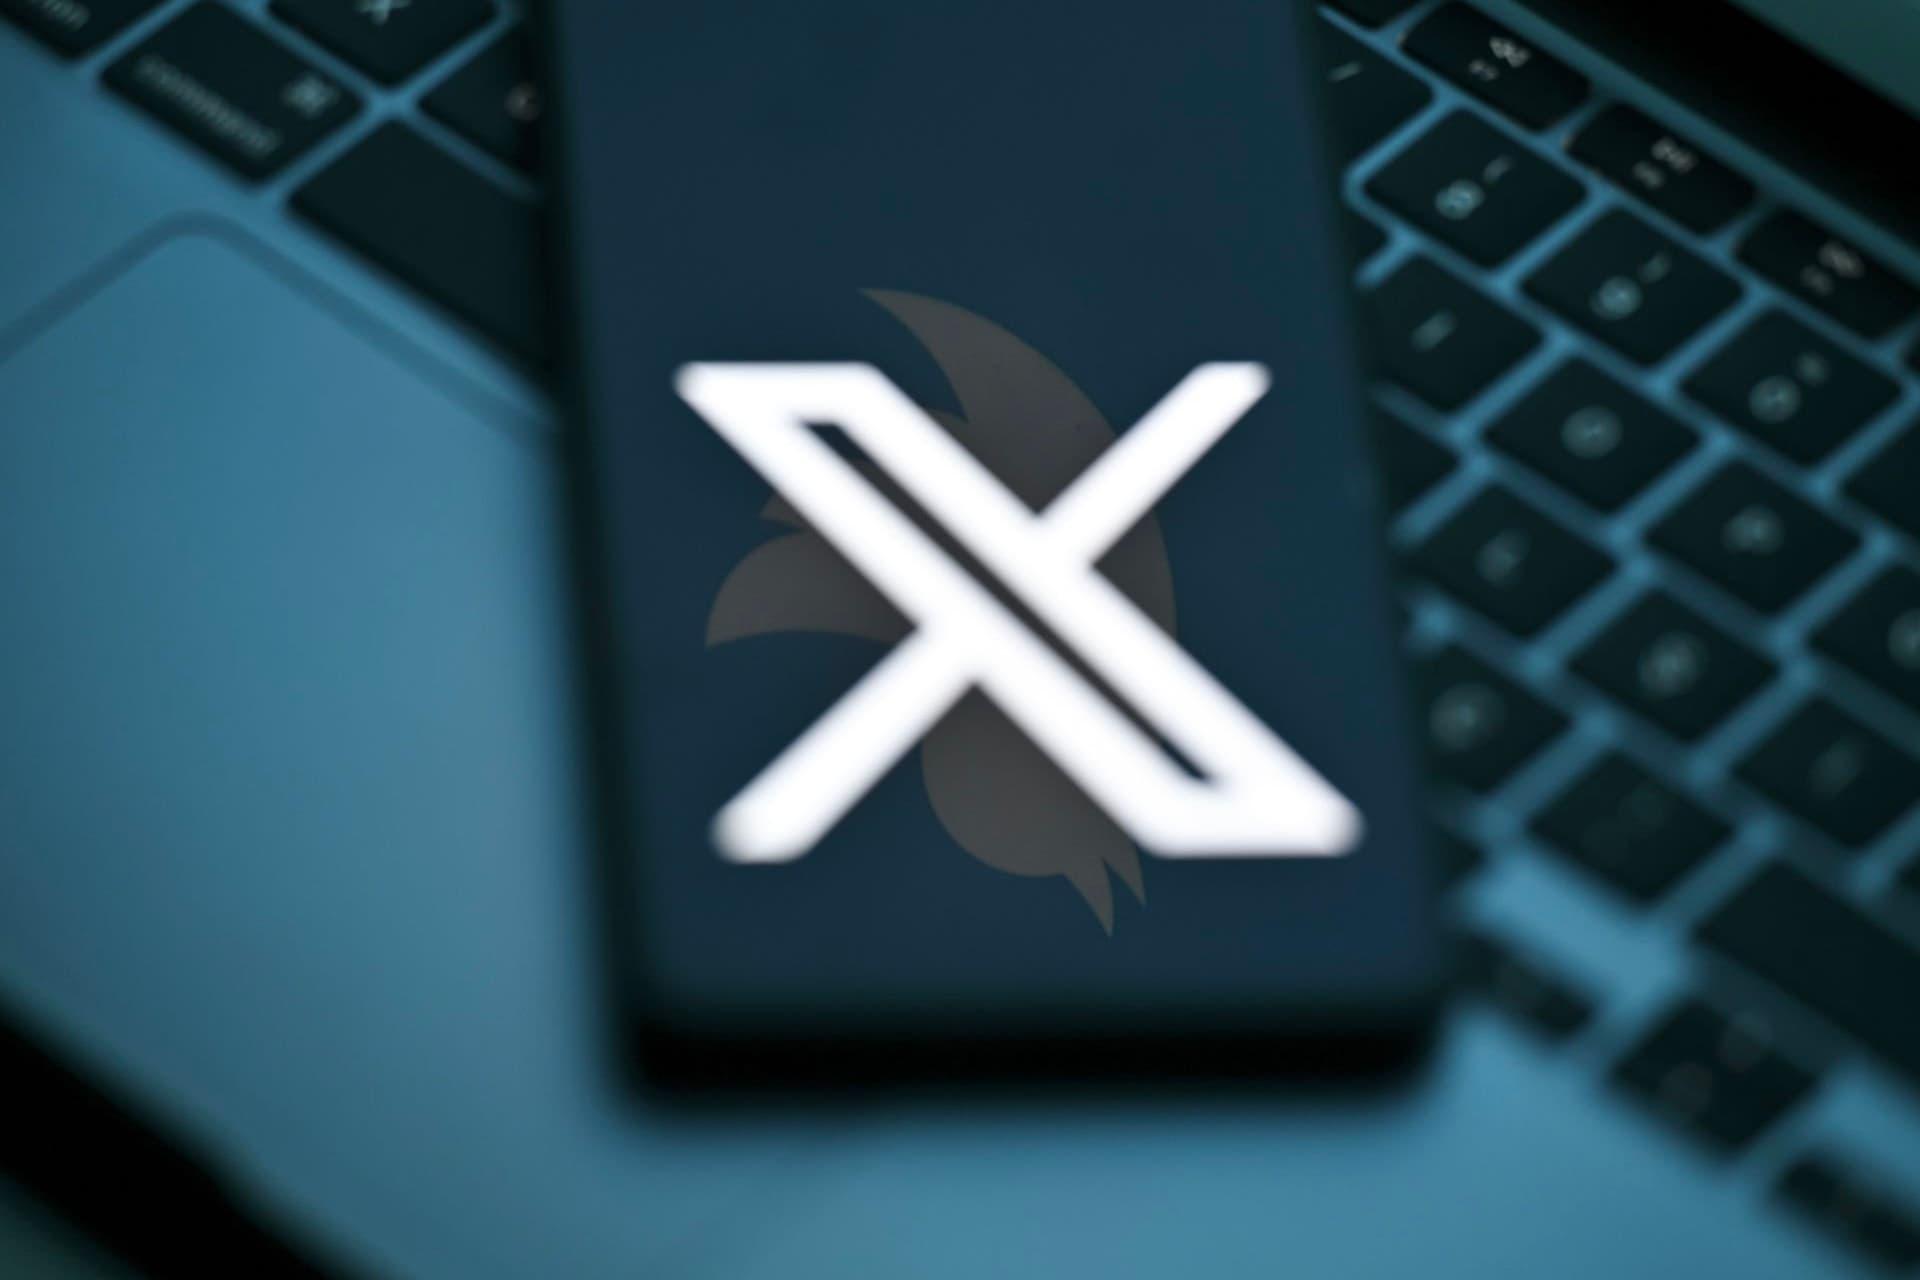 ایکس / X روی نمایشگر موبایل